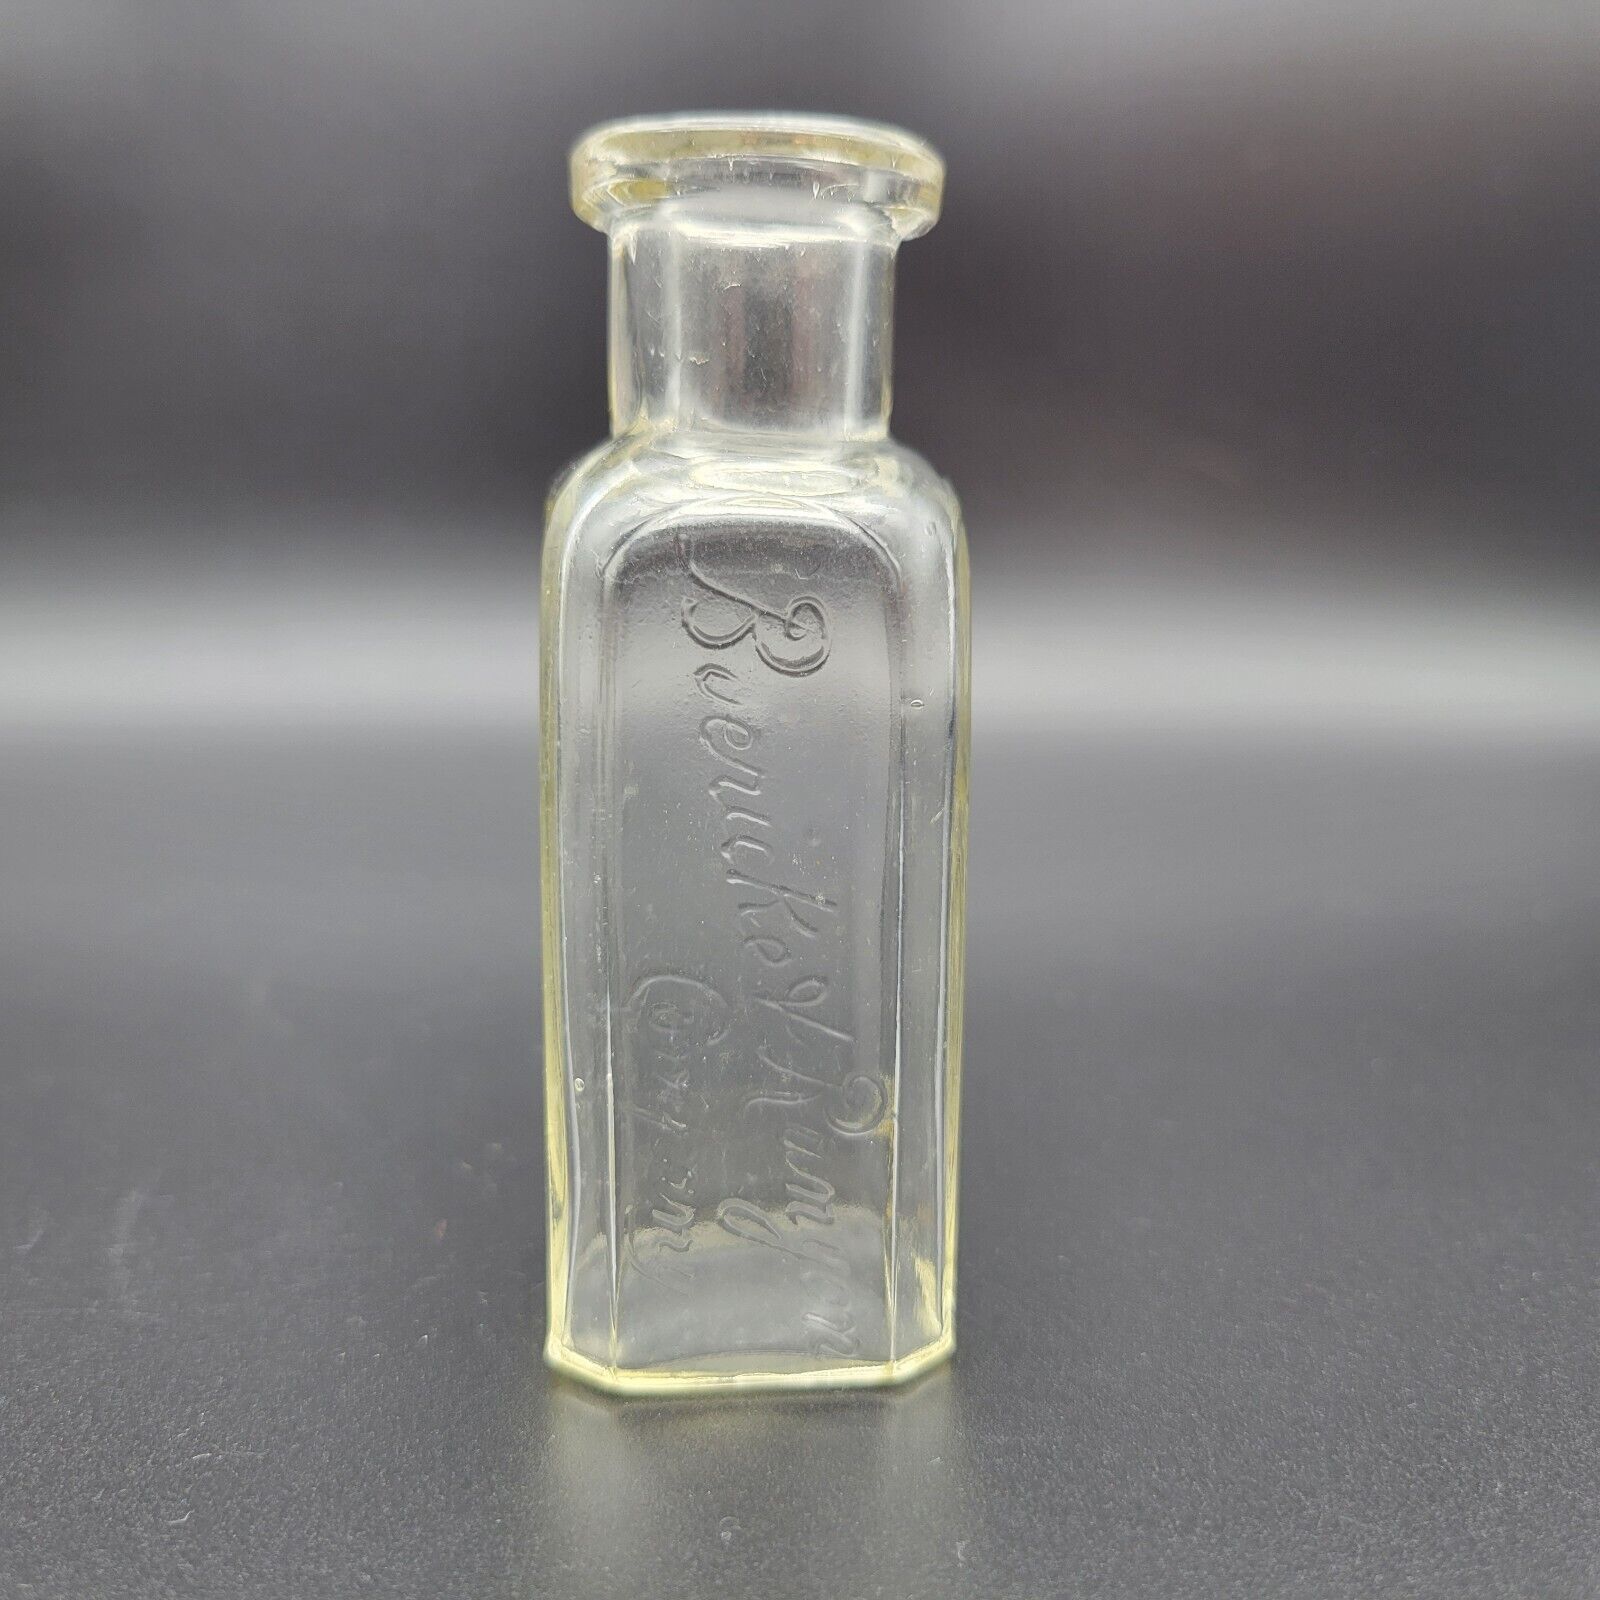 Vintage Antique Medicine Bottles buericke rumyon company